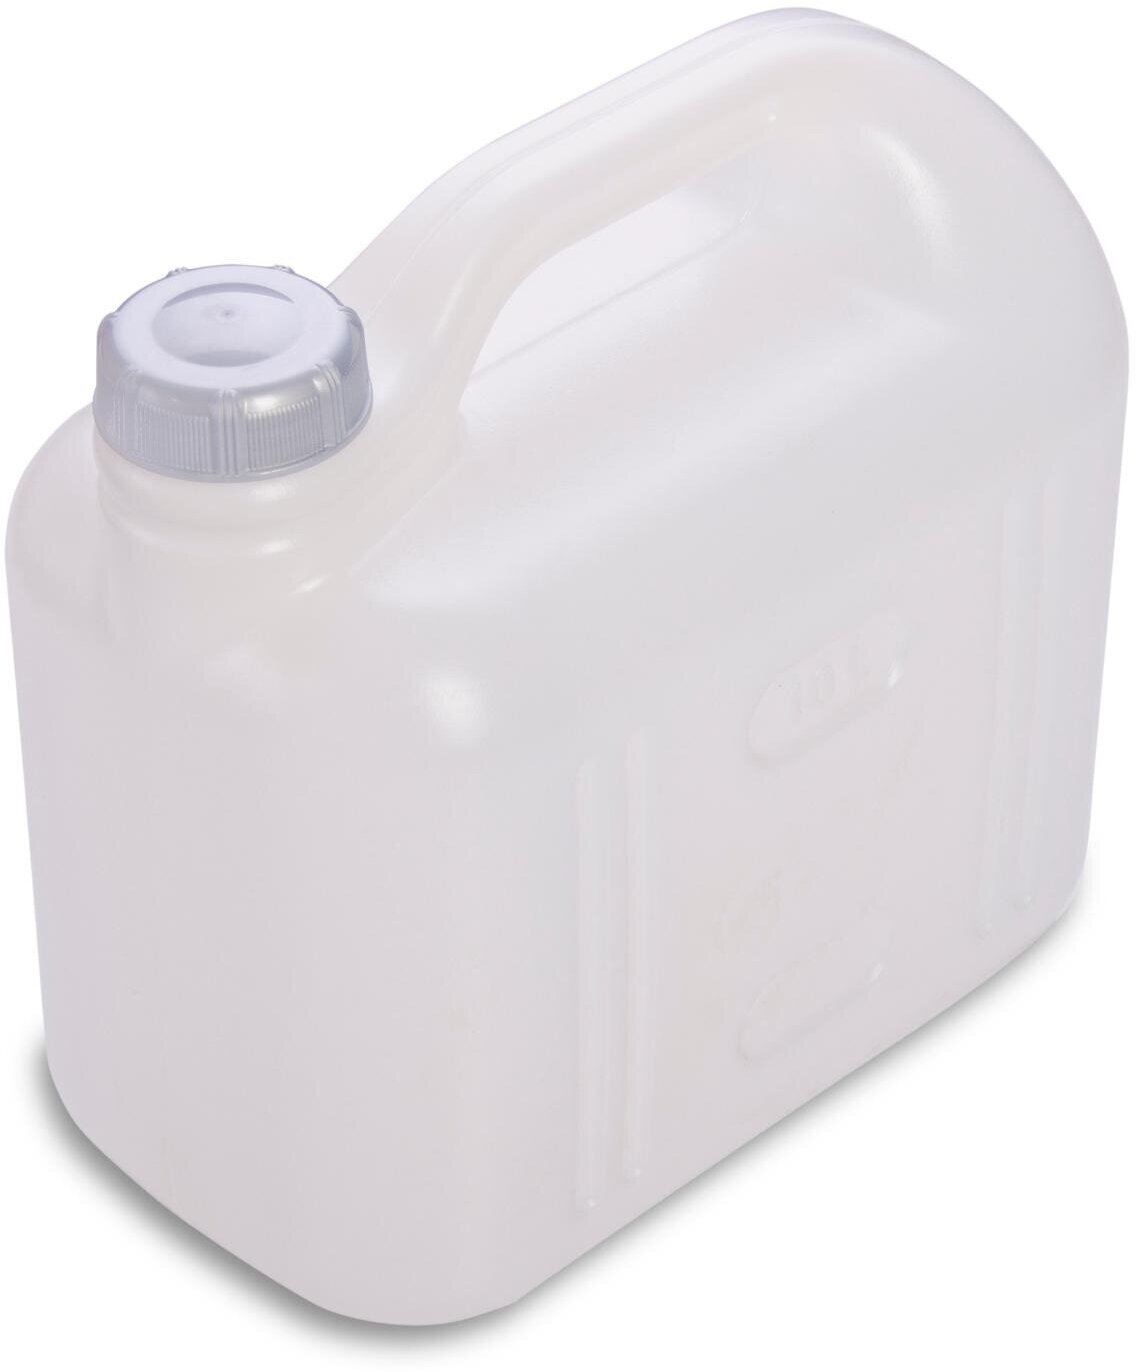 Канистра 10 л белая герметичная тара незаменима для удобной транспортировки различных жидкостей: соков воды молочной продукции этилового спирта олифы.